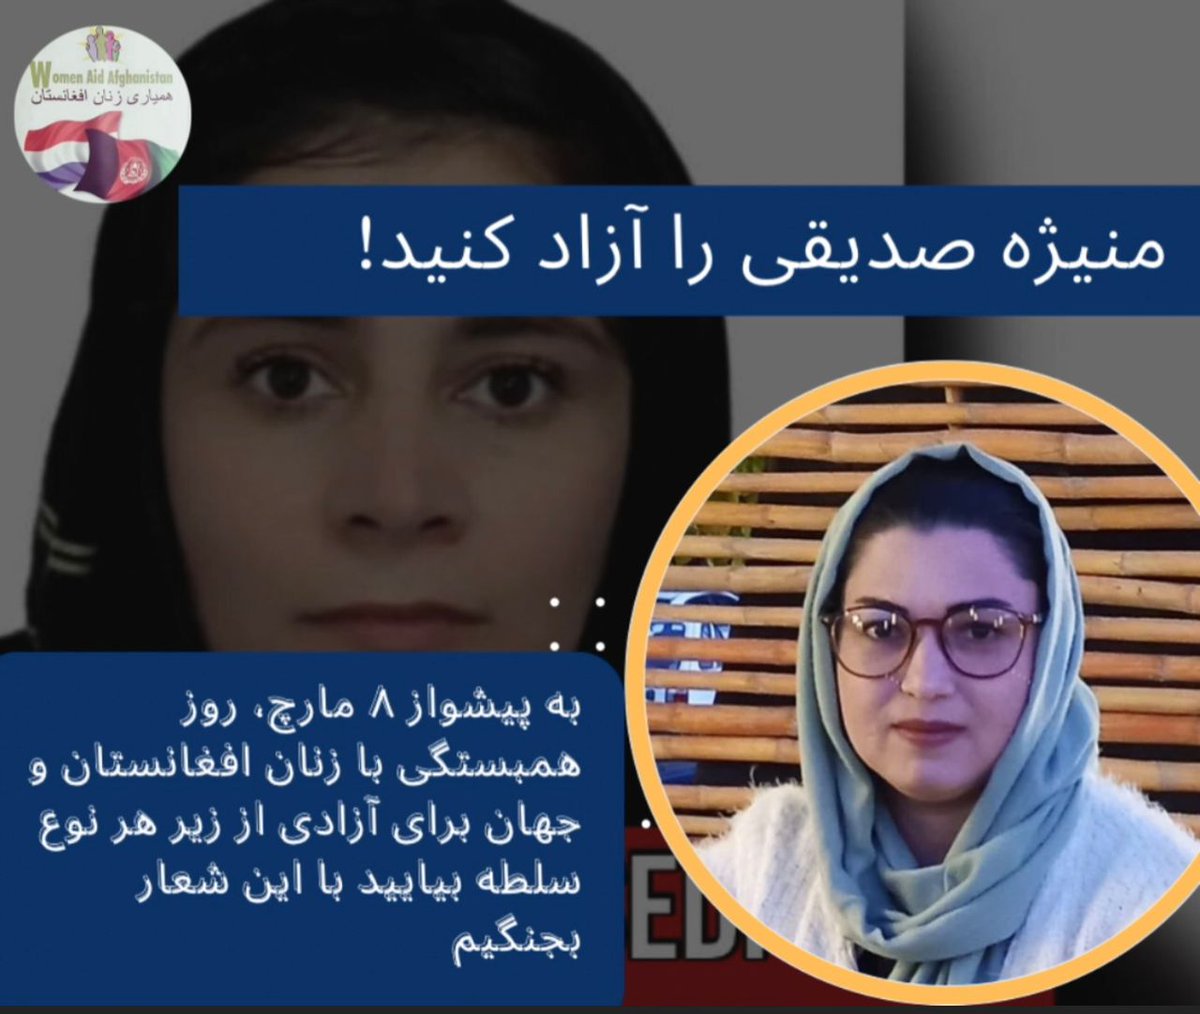 نه به #طالب ، نه به #تروریست .
به پشواز 8 مارچ، روز همبستگي با زنان افغانستان ‌و جهان براي آزادي از زير هر نوع سلط
بيائید با اين شعار برزميم!
من هم منیژه ام 
منیژه صدیقی را آزاد کنید
#FreeManizhaSeddiqi